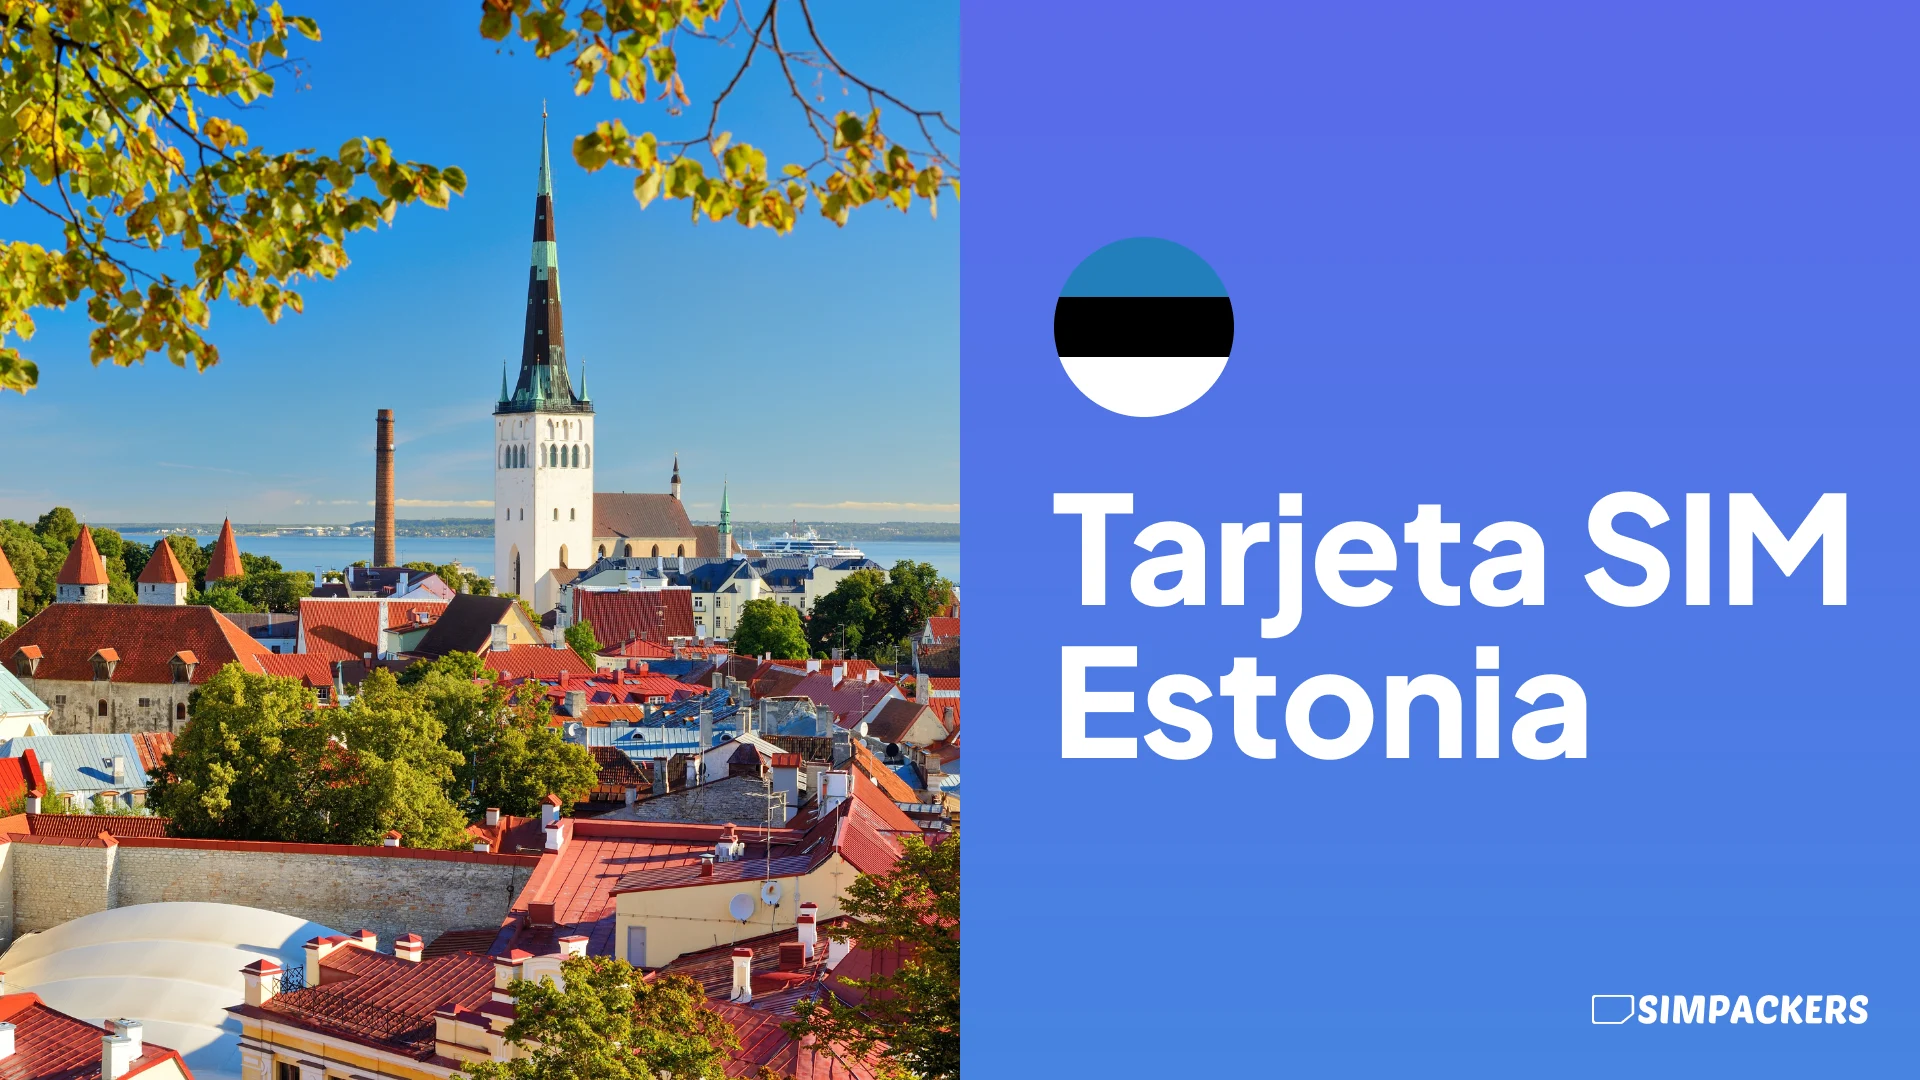 ES/FEATURED_IMAGES/tarjeta-sim-estonia.webp